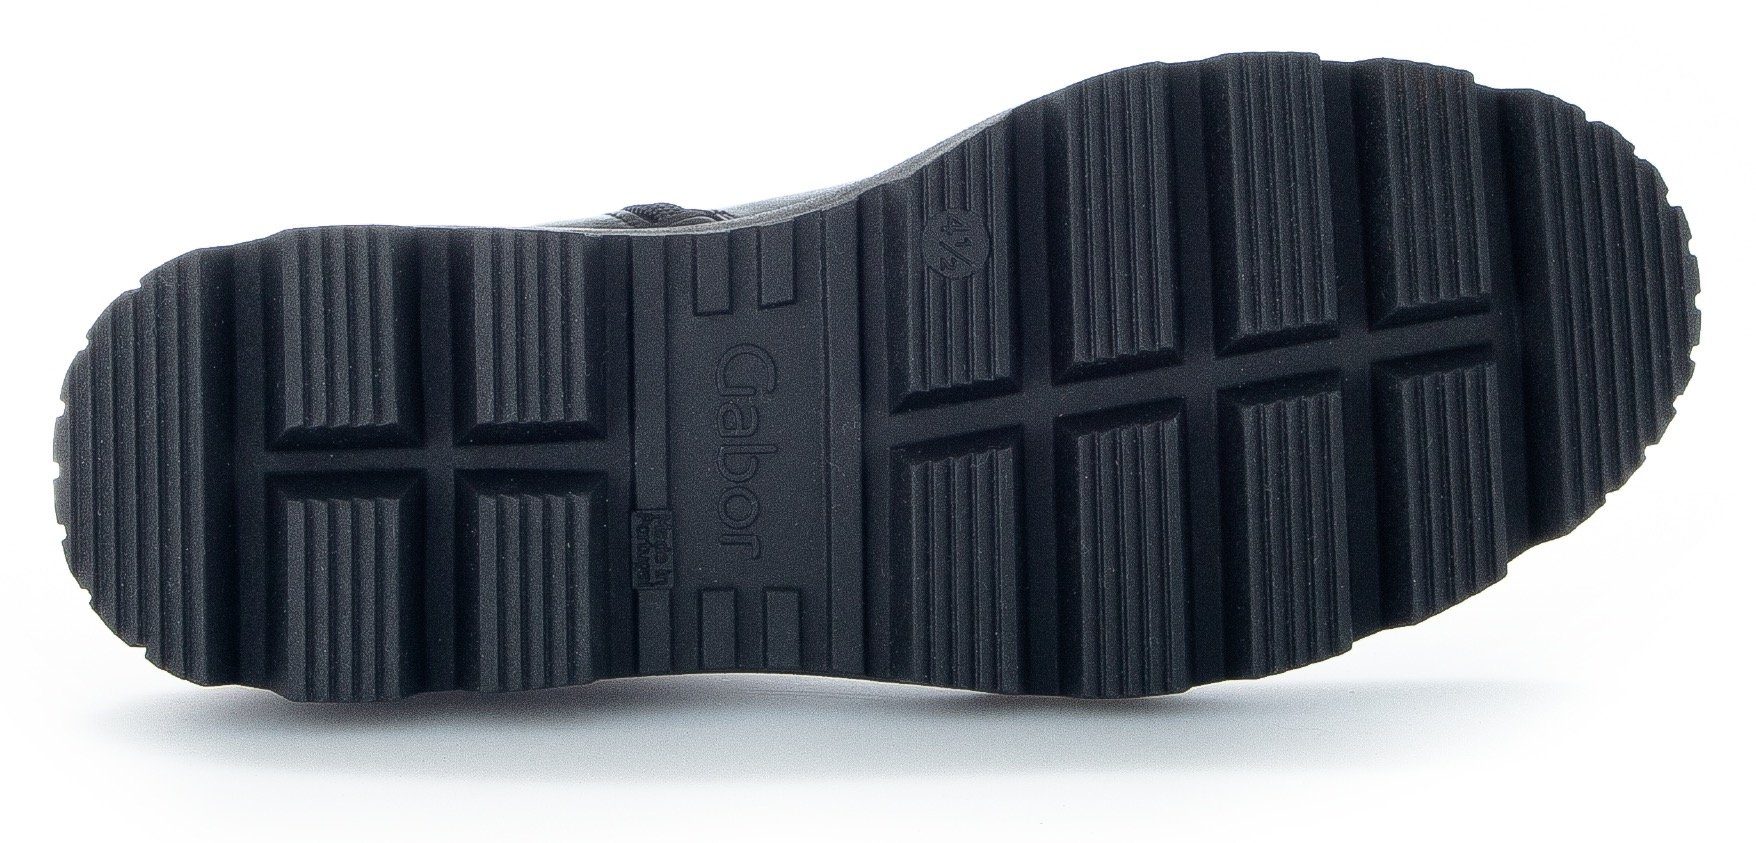 Gabor Stiefelette schwarz Laufsohle mit markanter